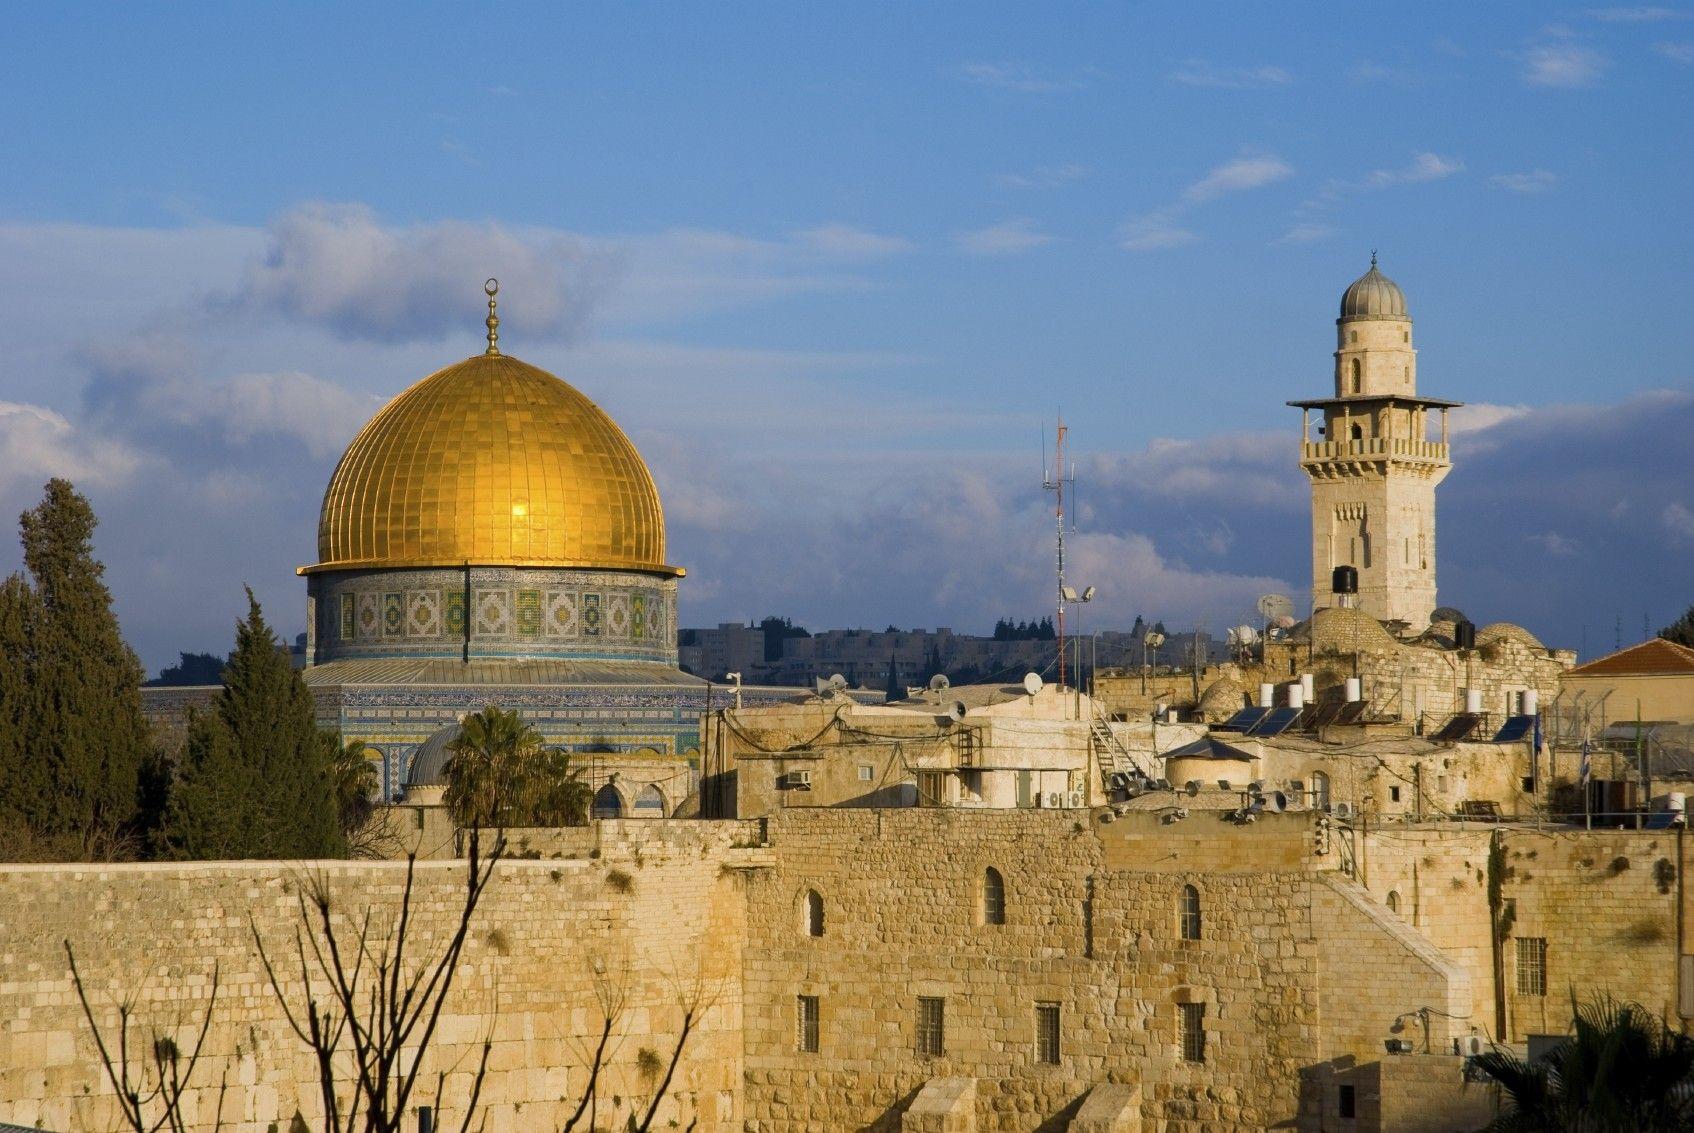 Jerusalem Images - Free Download on Freepik